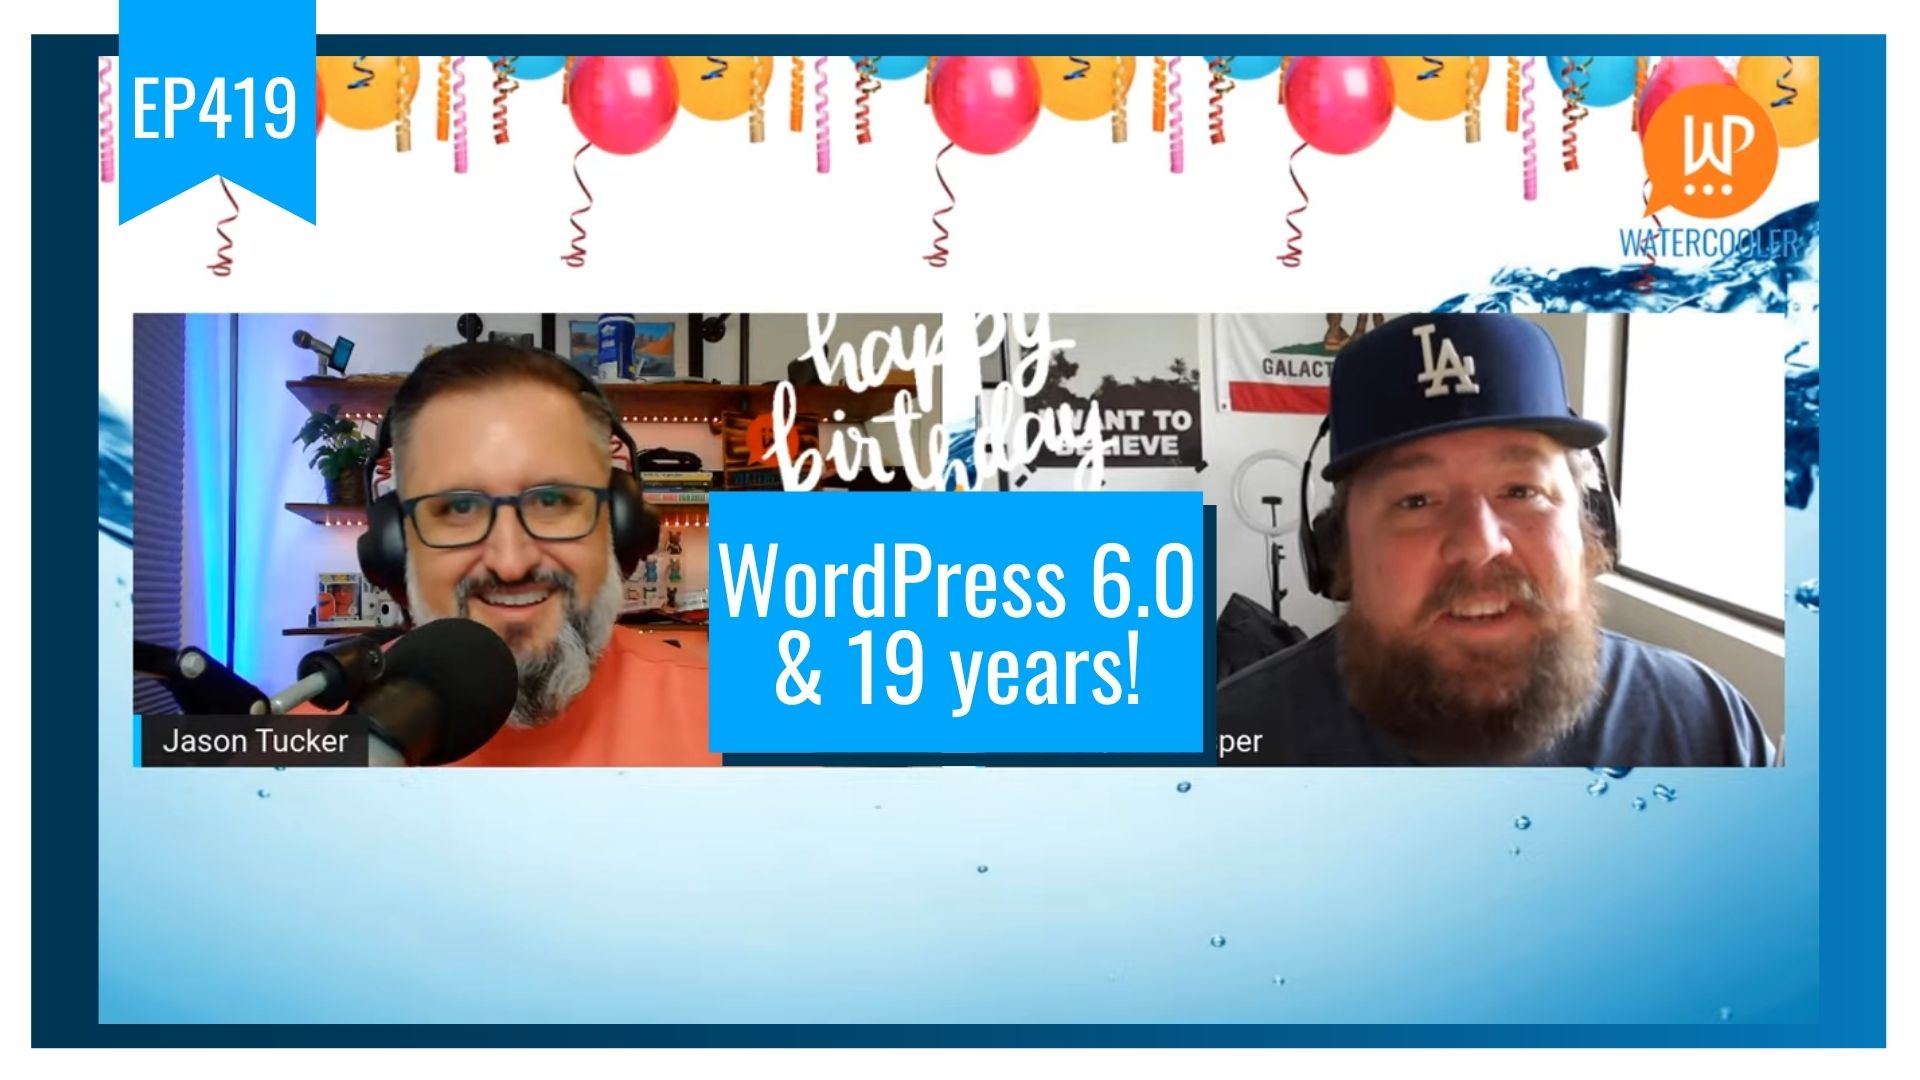 EP419 - WordPress 6.0 & 19 years!